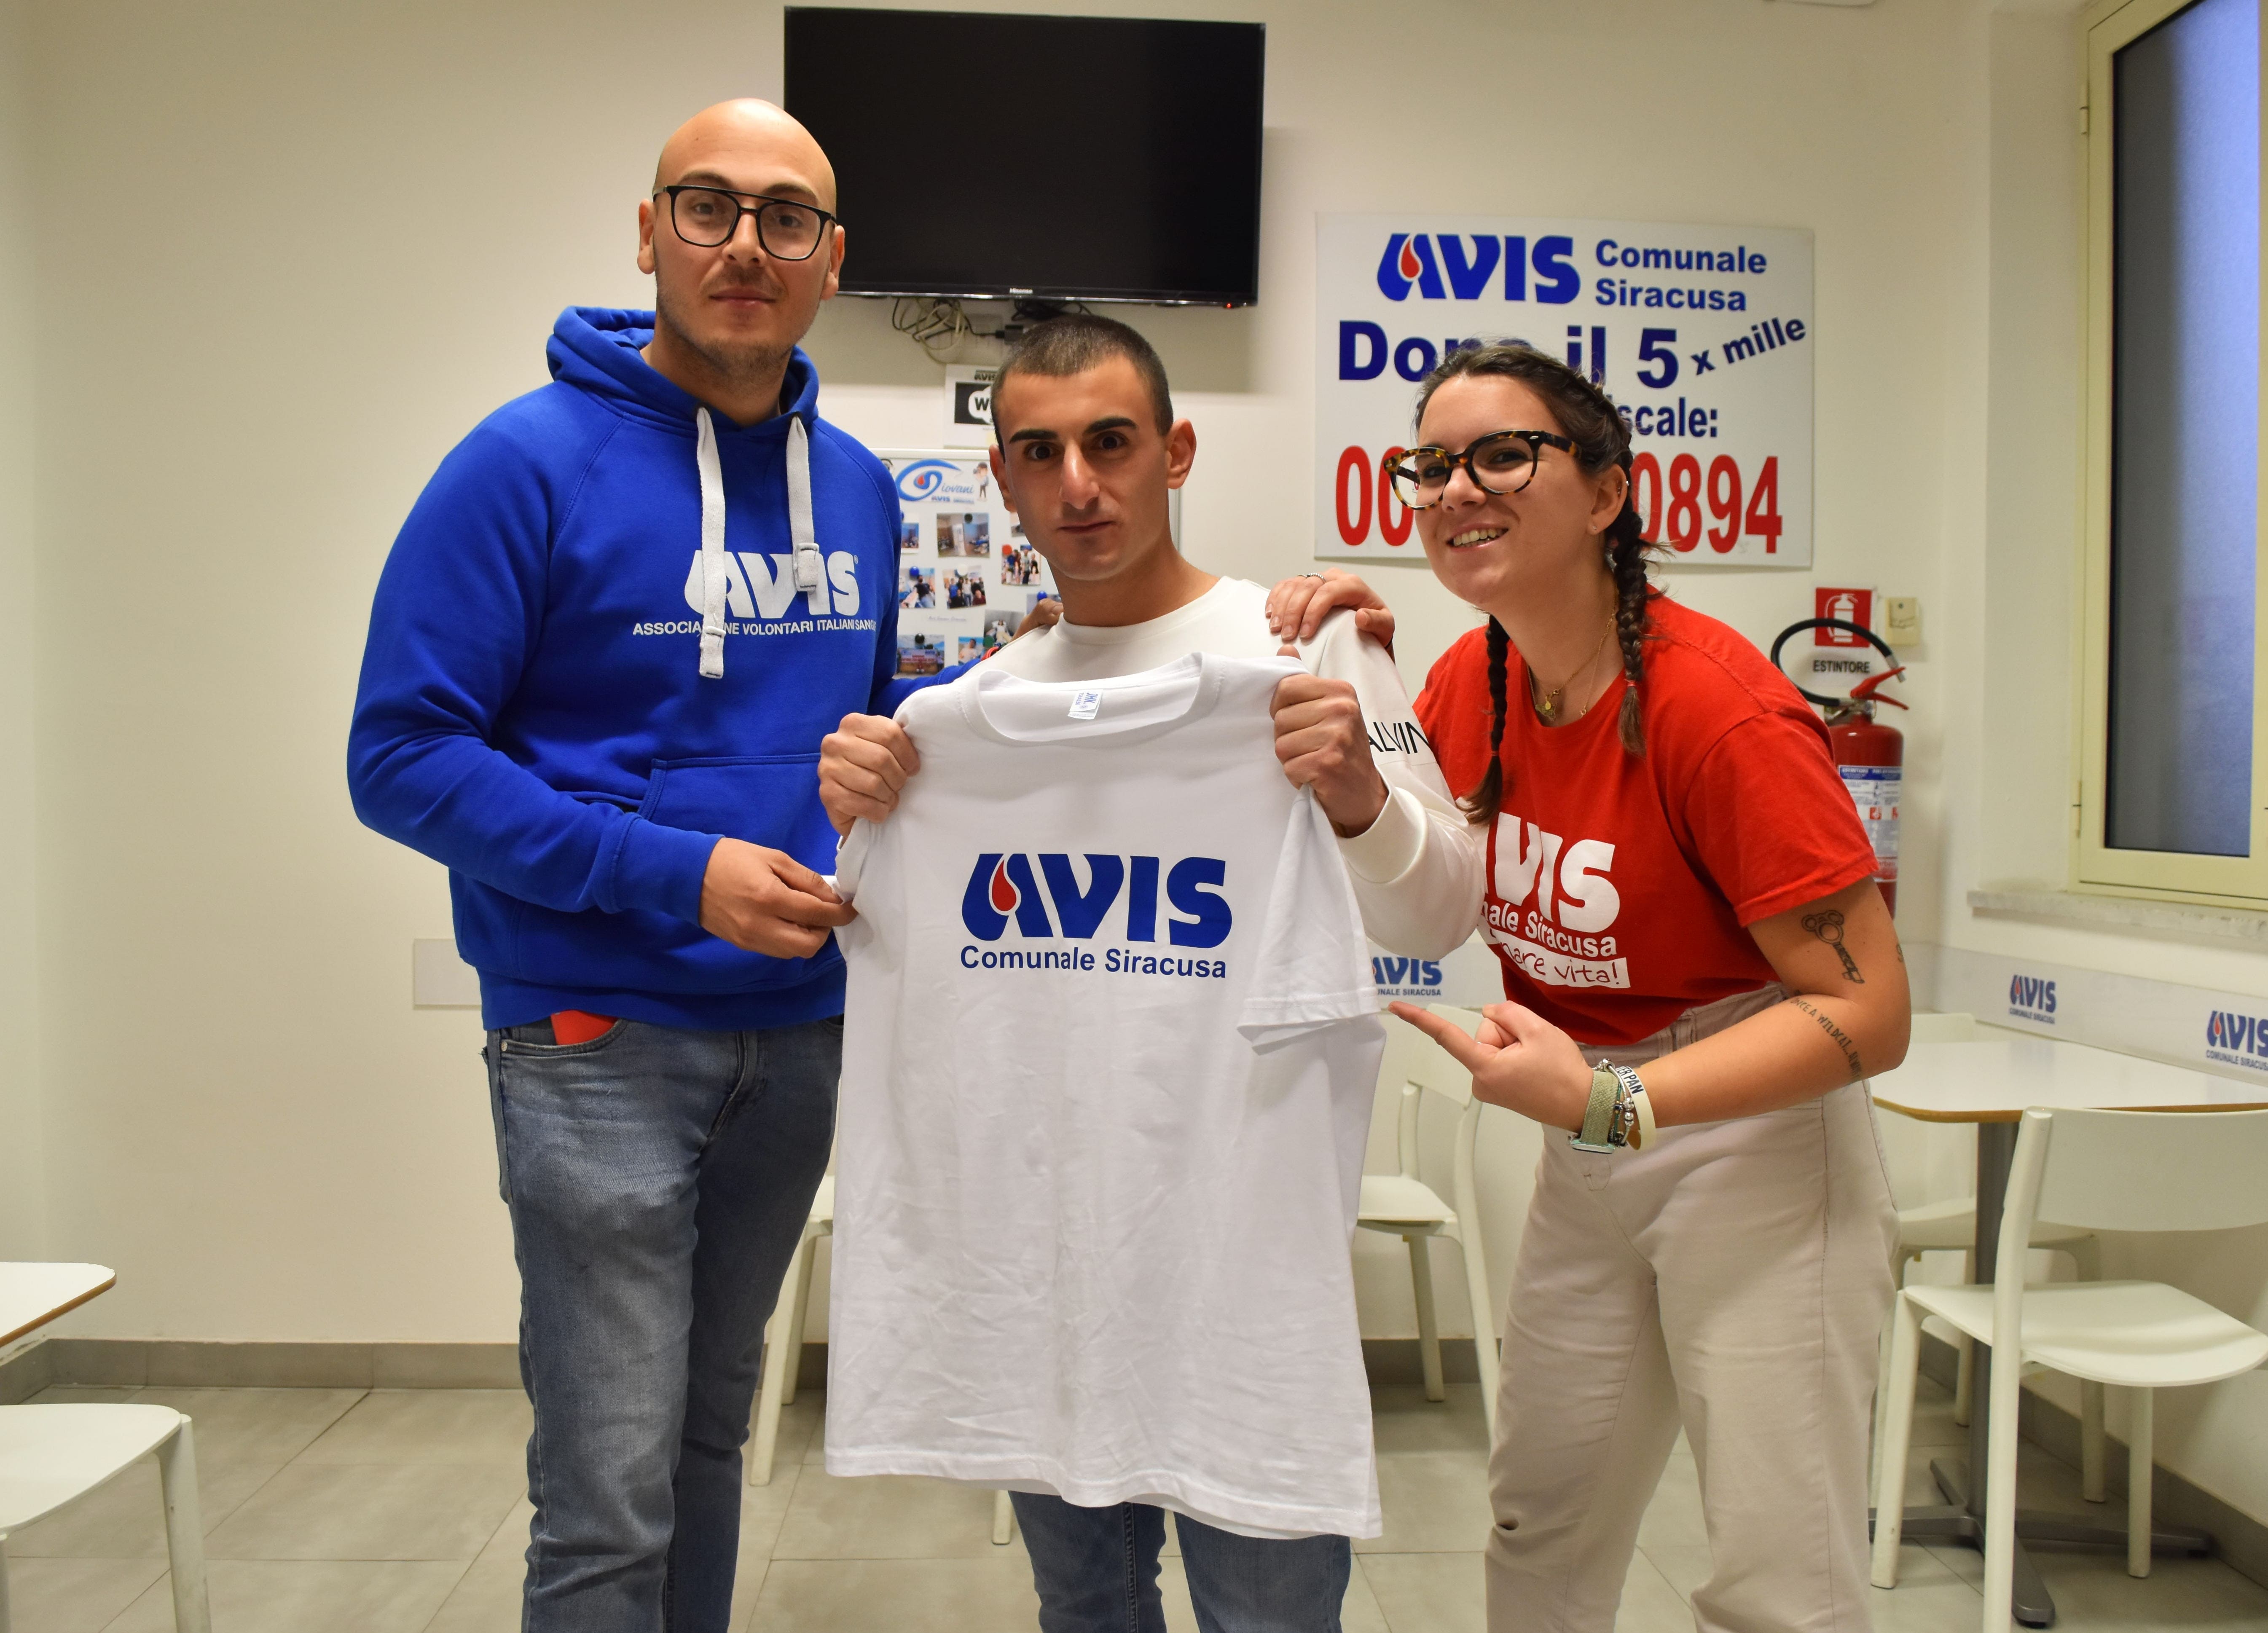 Donazione di sangue e sostenibilità: AVIS con Sebastian Colnaghi per spronare i giovani a donare